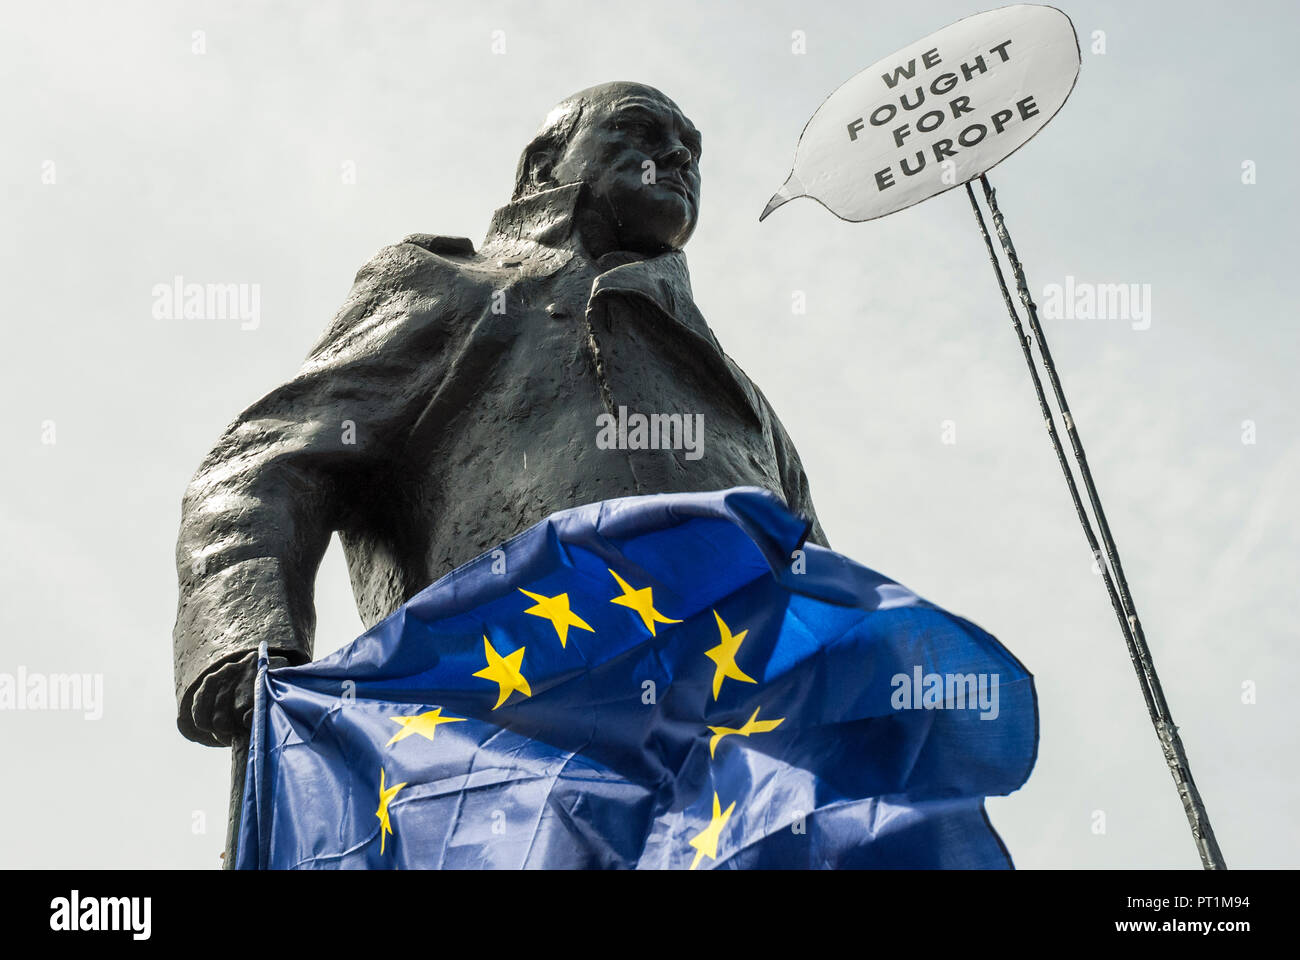 Statua di Sir Winston Churchill si trova al di fuori del Parlamento tenendo una bandiera UE (blu con stelle d'oro) con un discorso bolla "Abbiamo lottato per l'Europa" Foto Stock